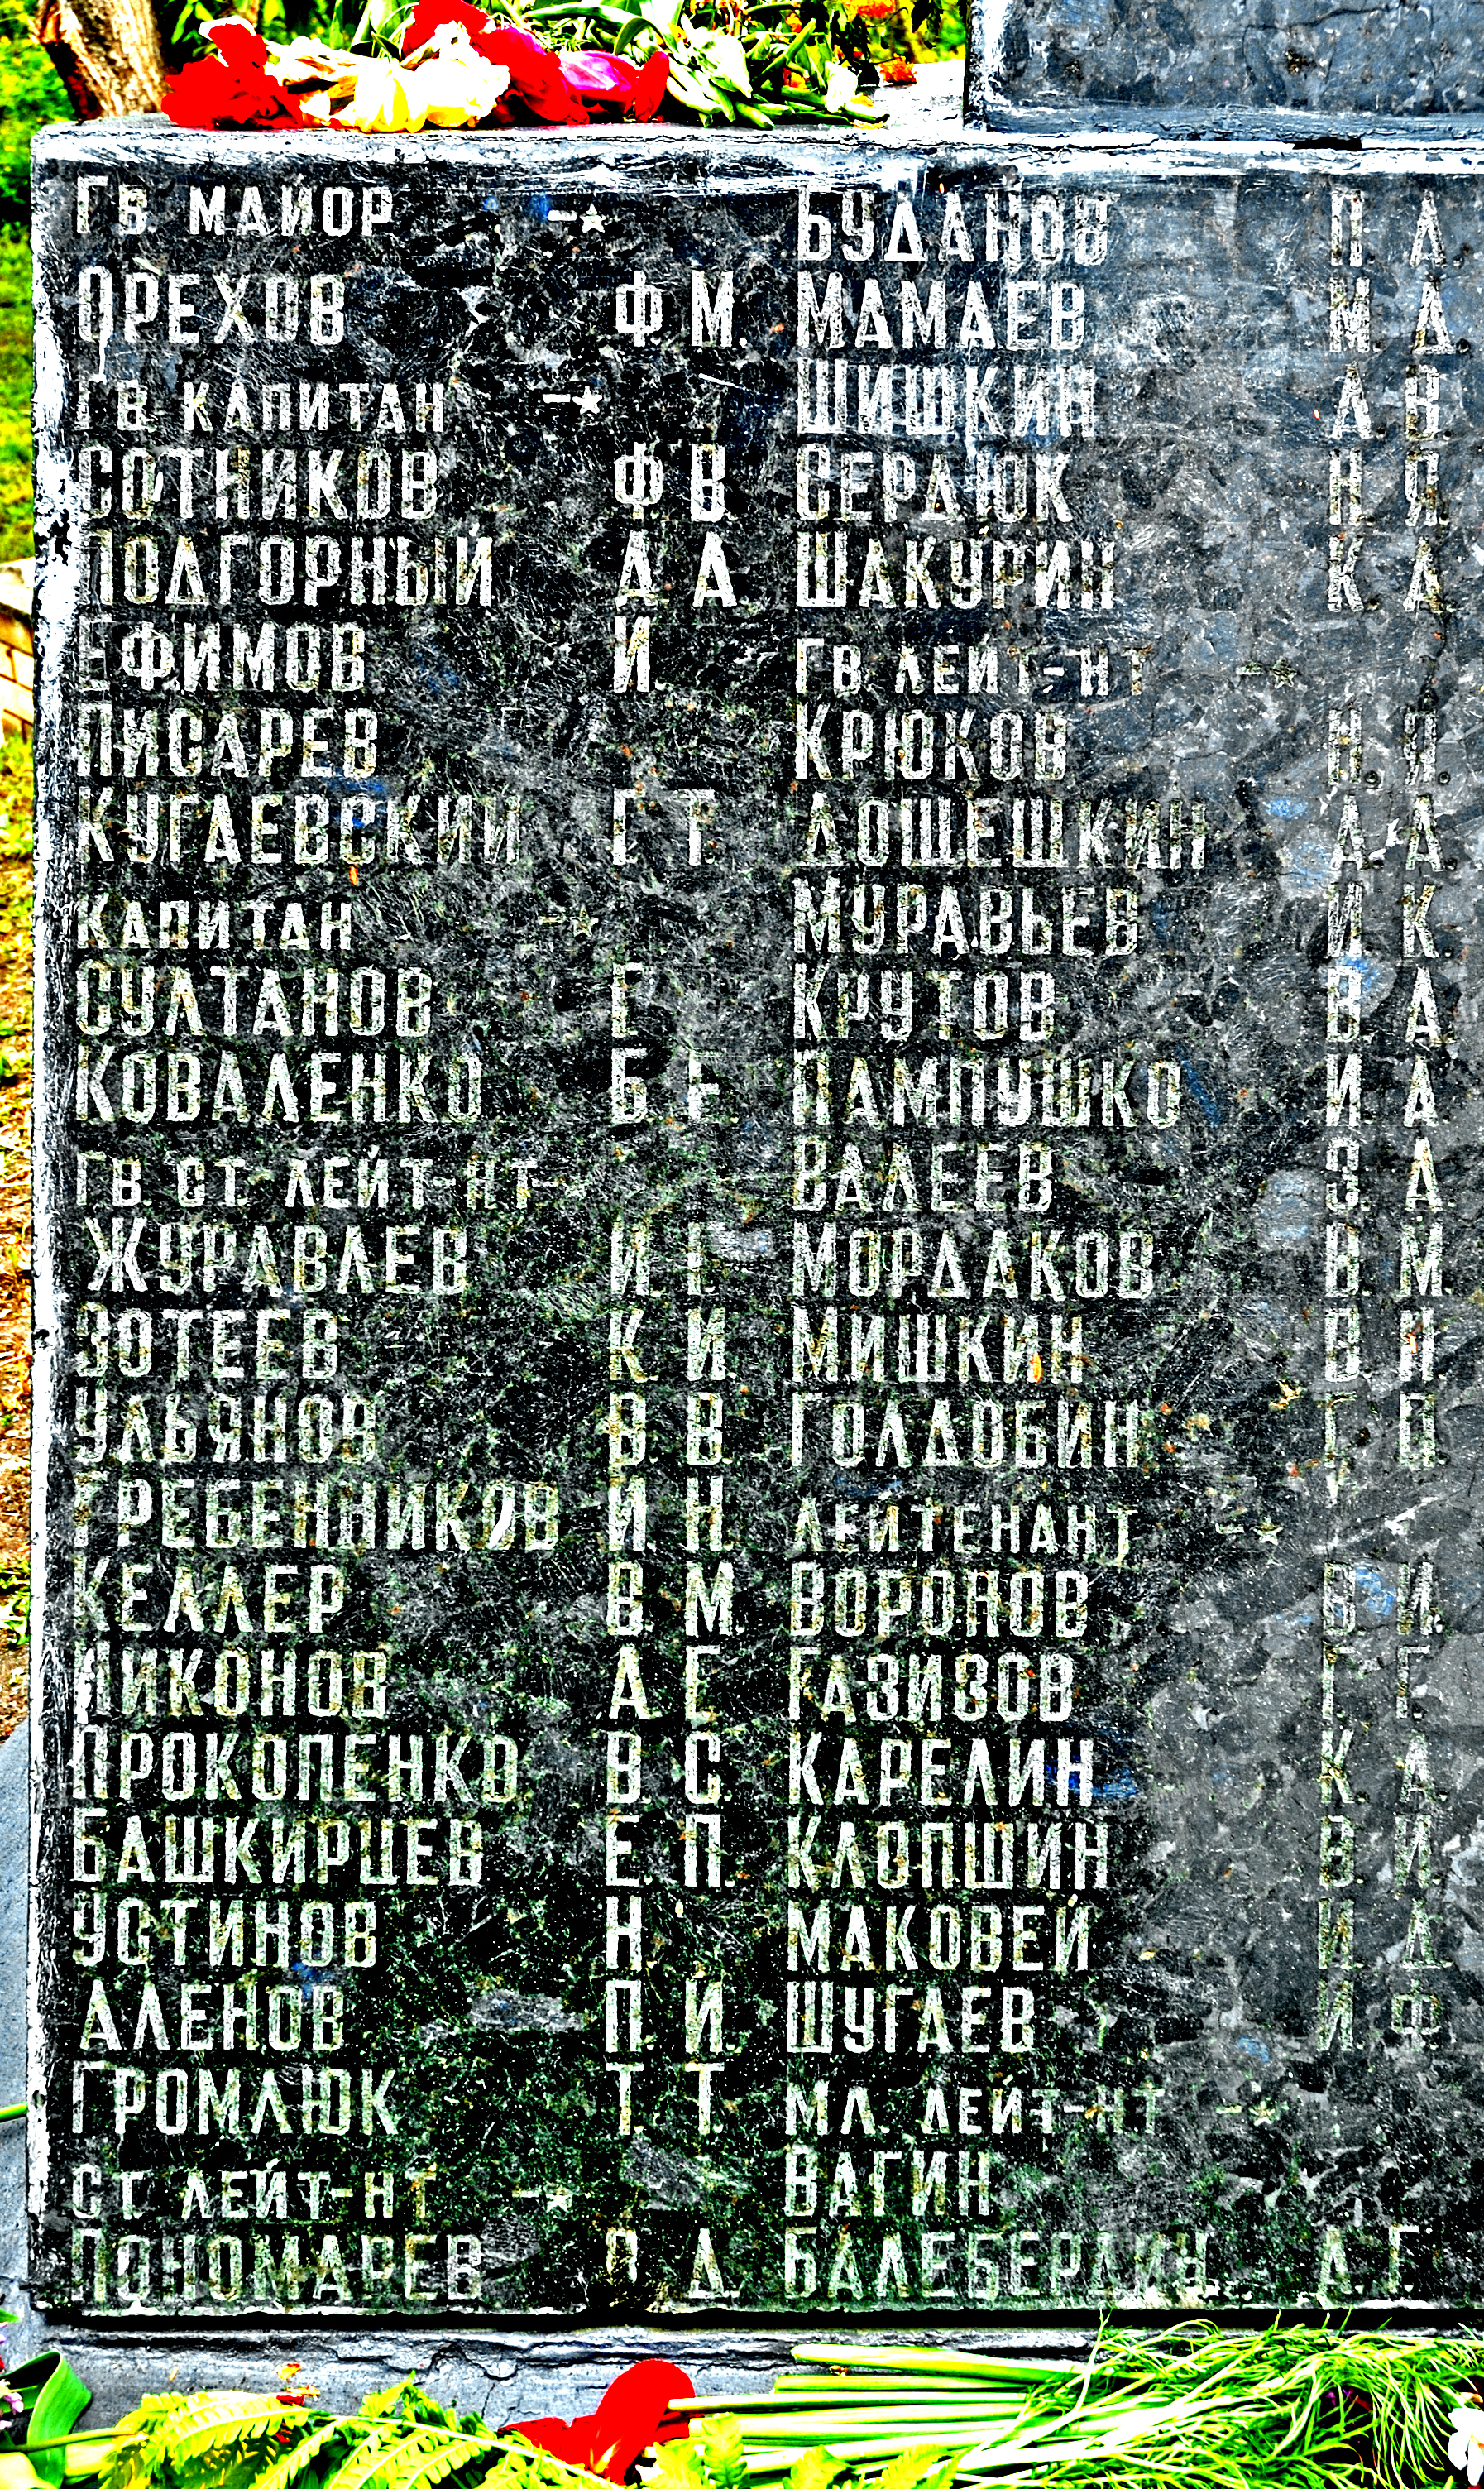 Современный вид братской могилы кладбище п.г.т. Градижска